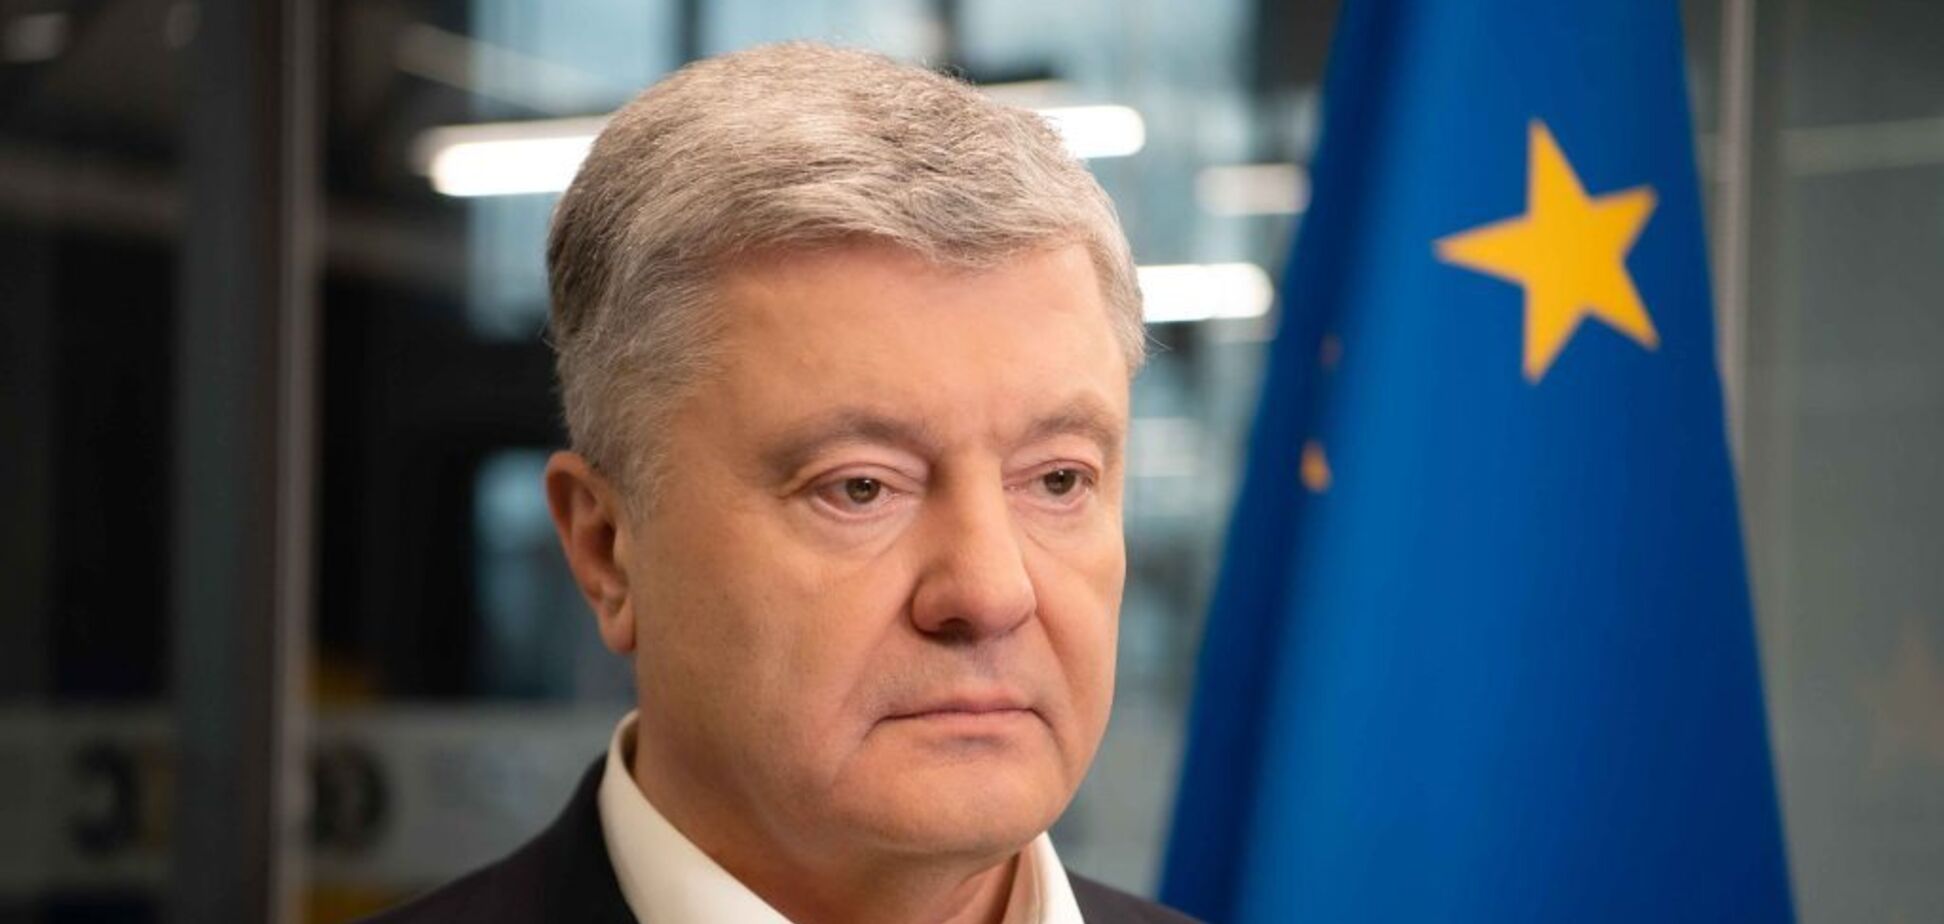 Порошенко в годовщину безвиза: Украина победит и станет членом ЕС и НАТО